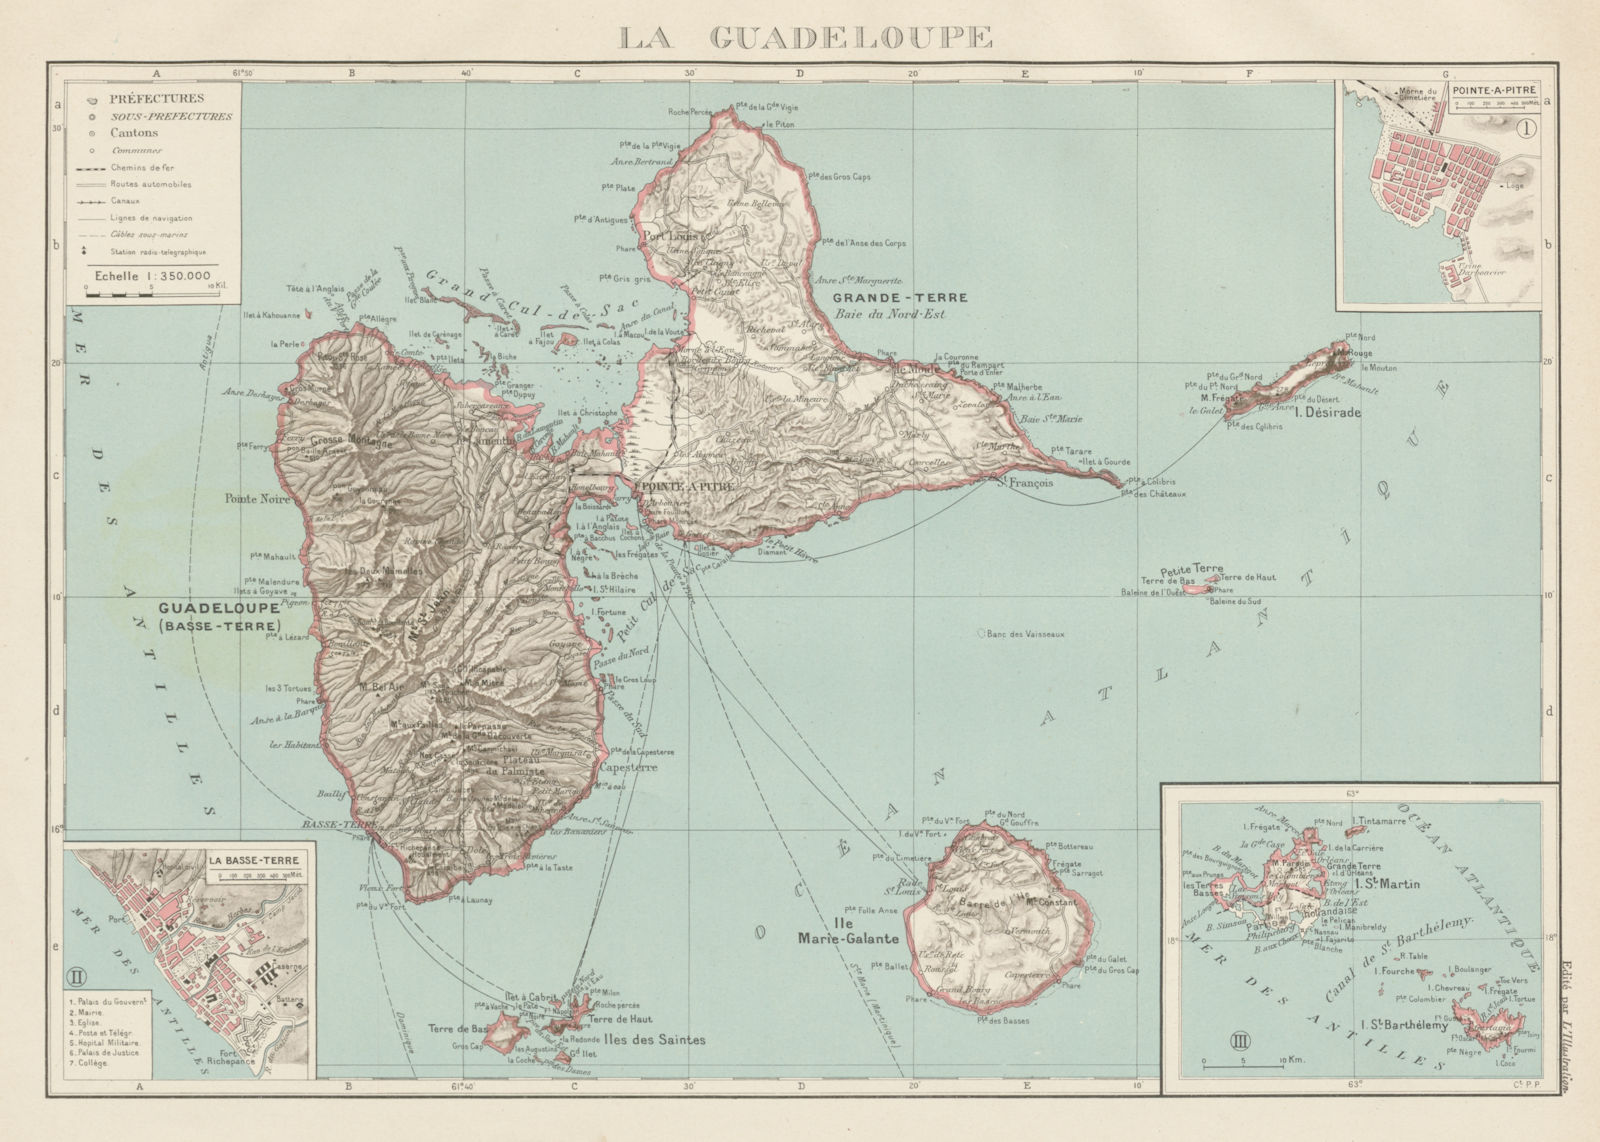 GUADELOUPE. Basse-Terre; Pointe-à-Pitre. St-Martin Saint-Barthélemy 1929 map